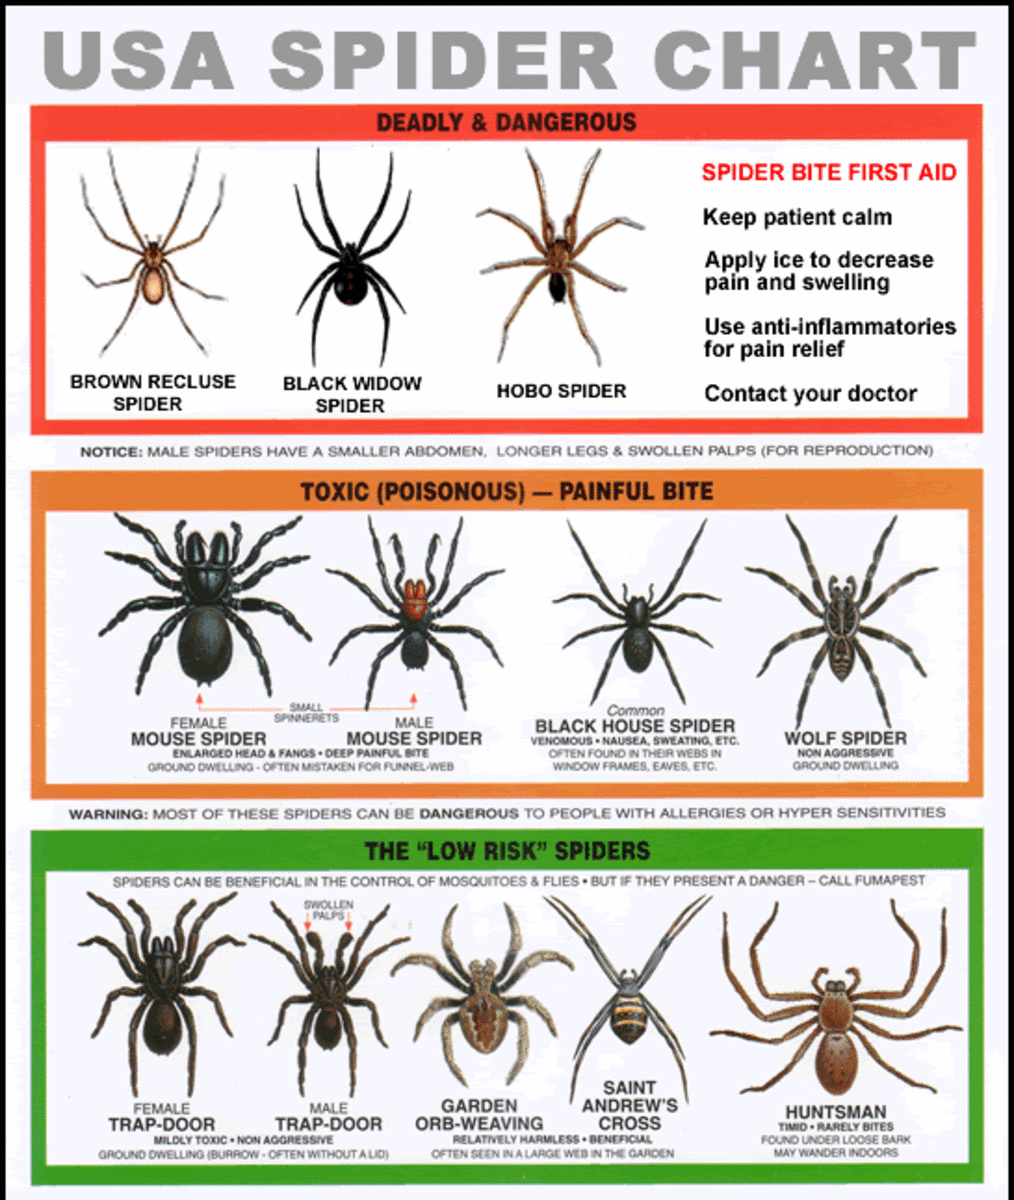 U.S. Poisonous Spiders Black Widow, Brown Recluse, & Hobo Dengarden